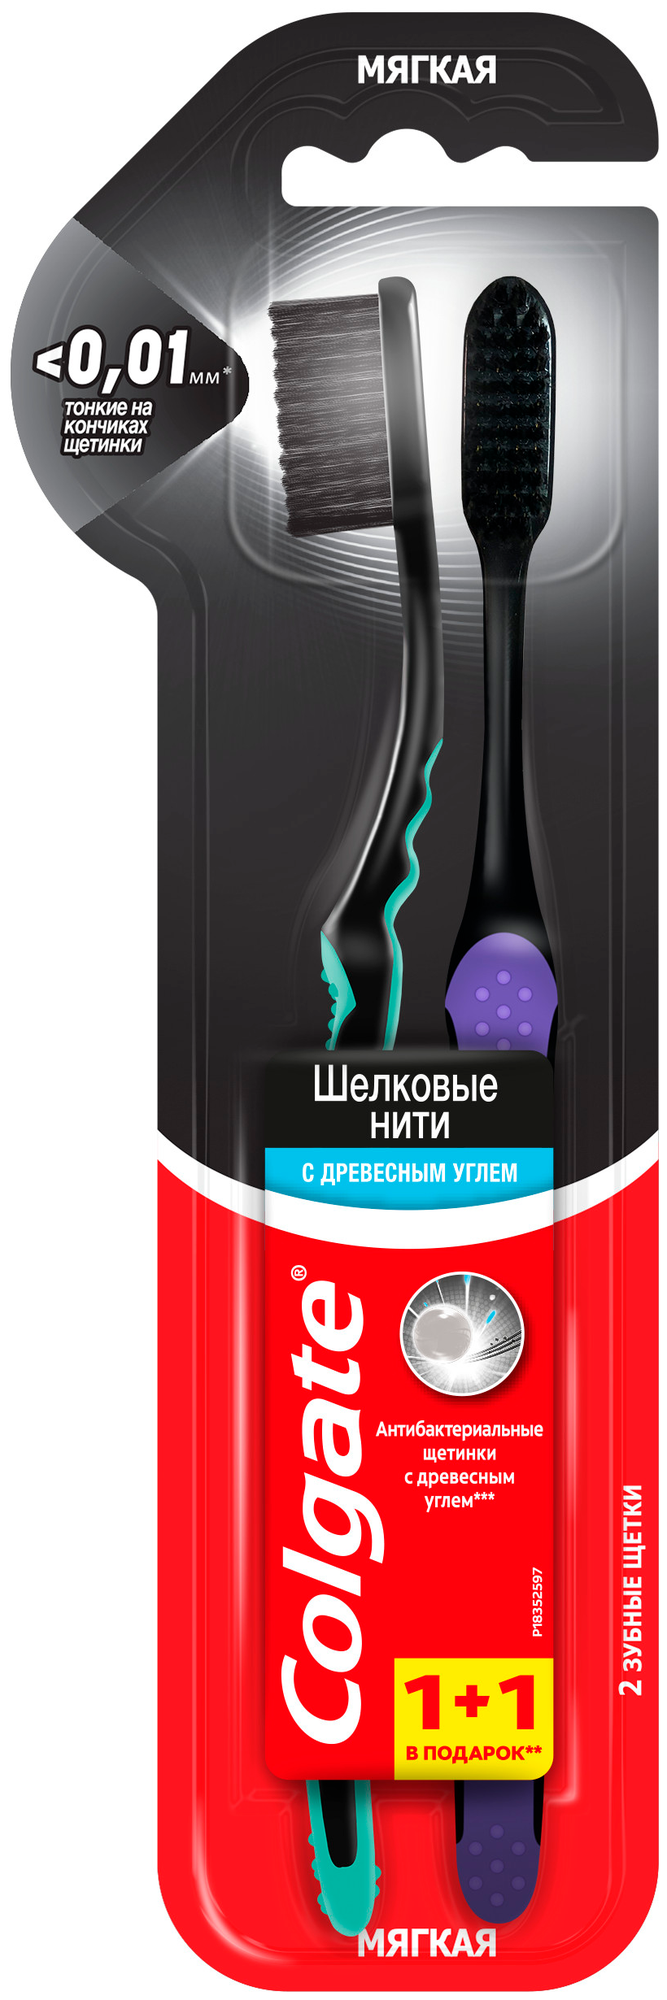 Зубная щетка Colgate Шелковые Нити с древесным углем (черная) для здоровья десен, мягкая, промоупаковка 1+1 в подарок, цвет в ассортименте